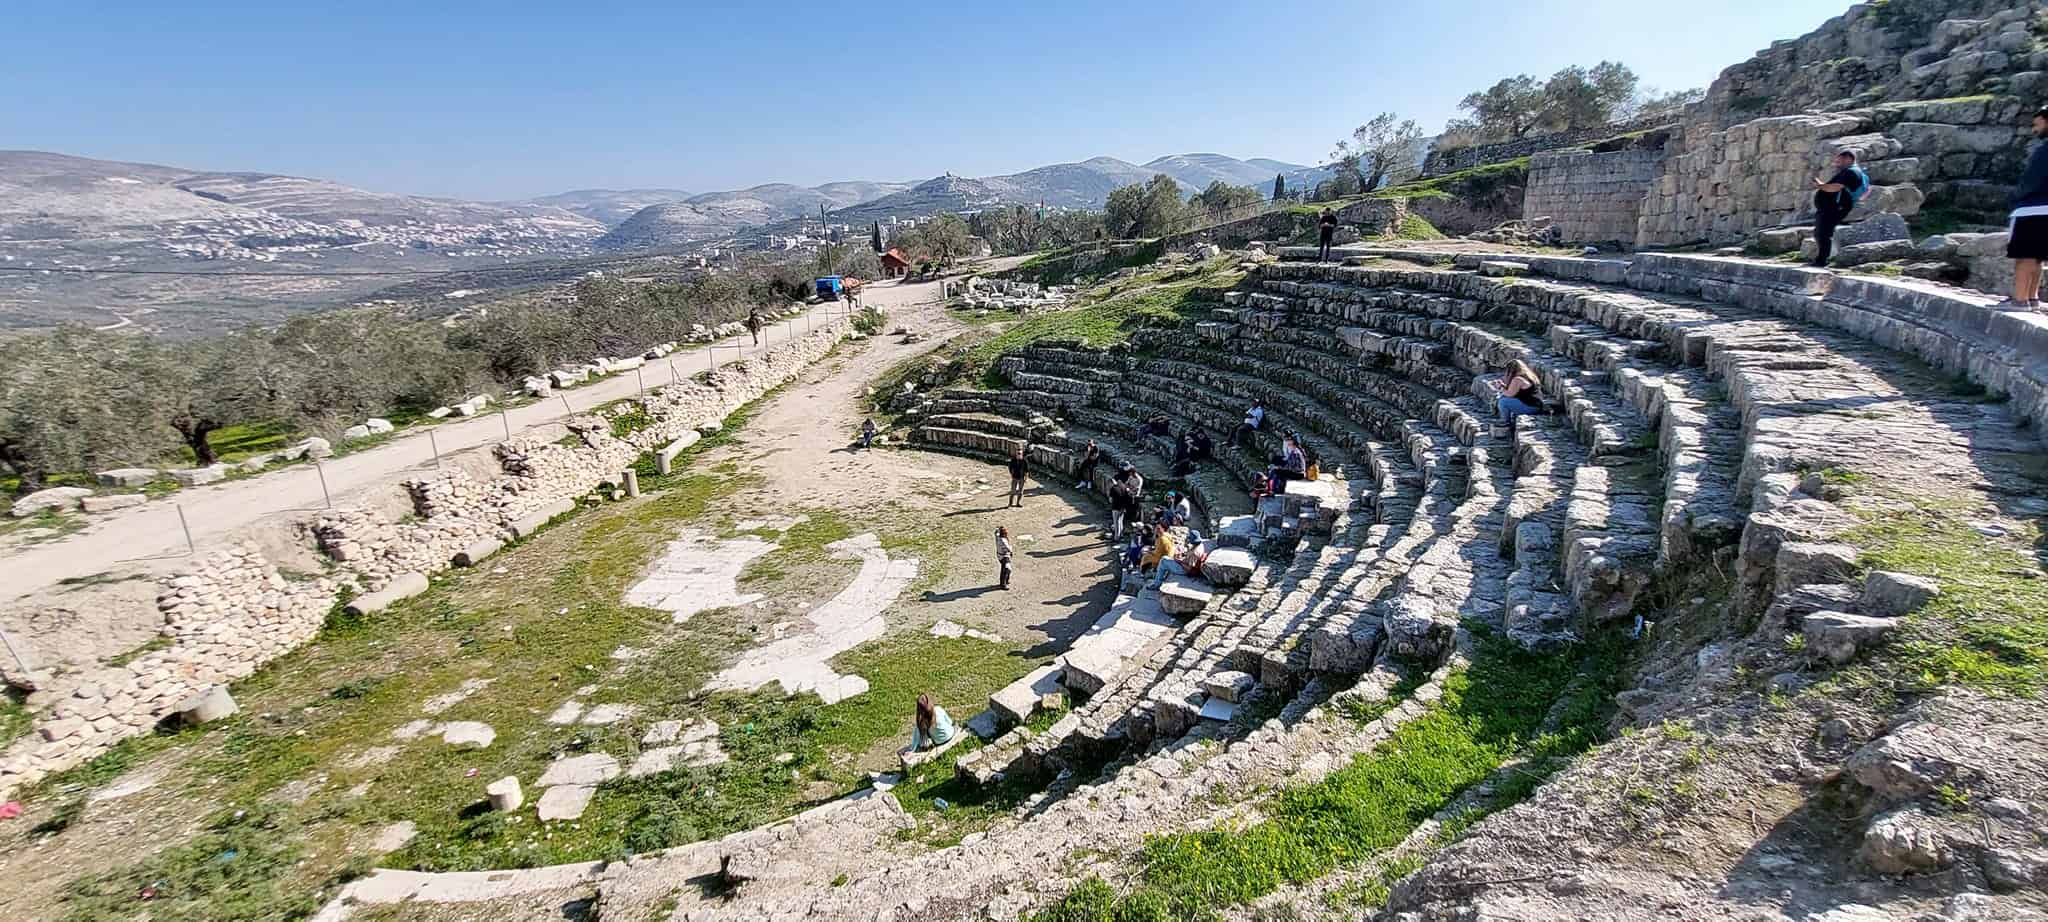 גן לאומי סבסטיה – העיר שומרון העתיקה